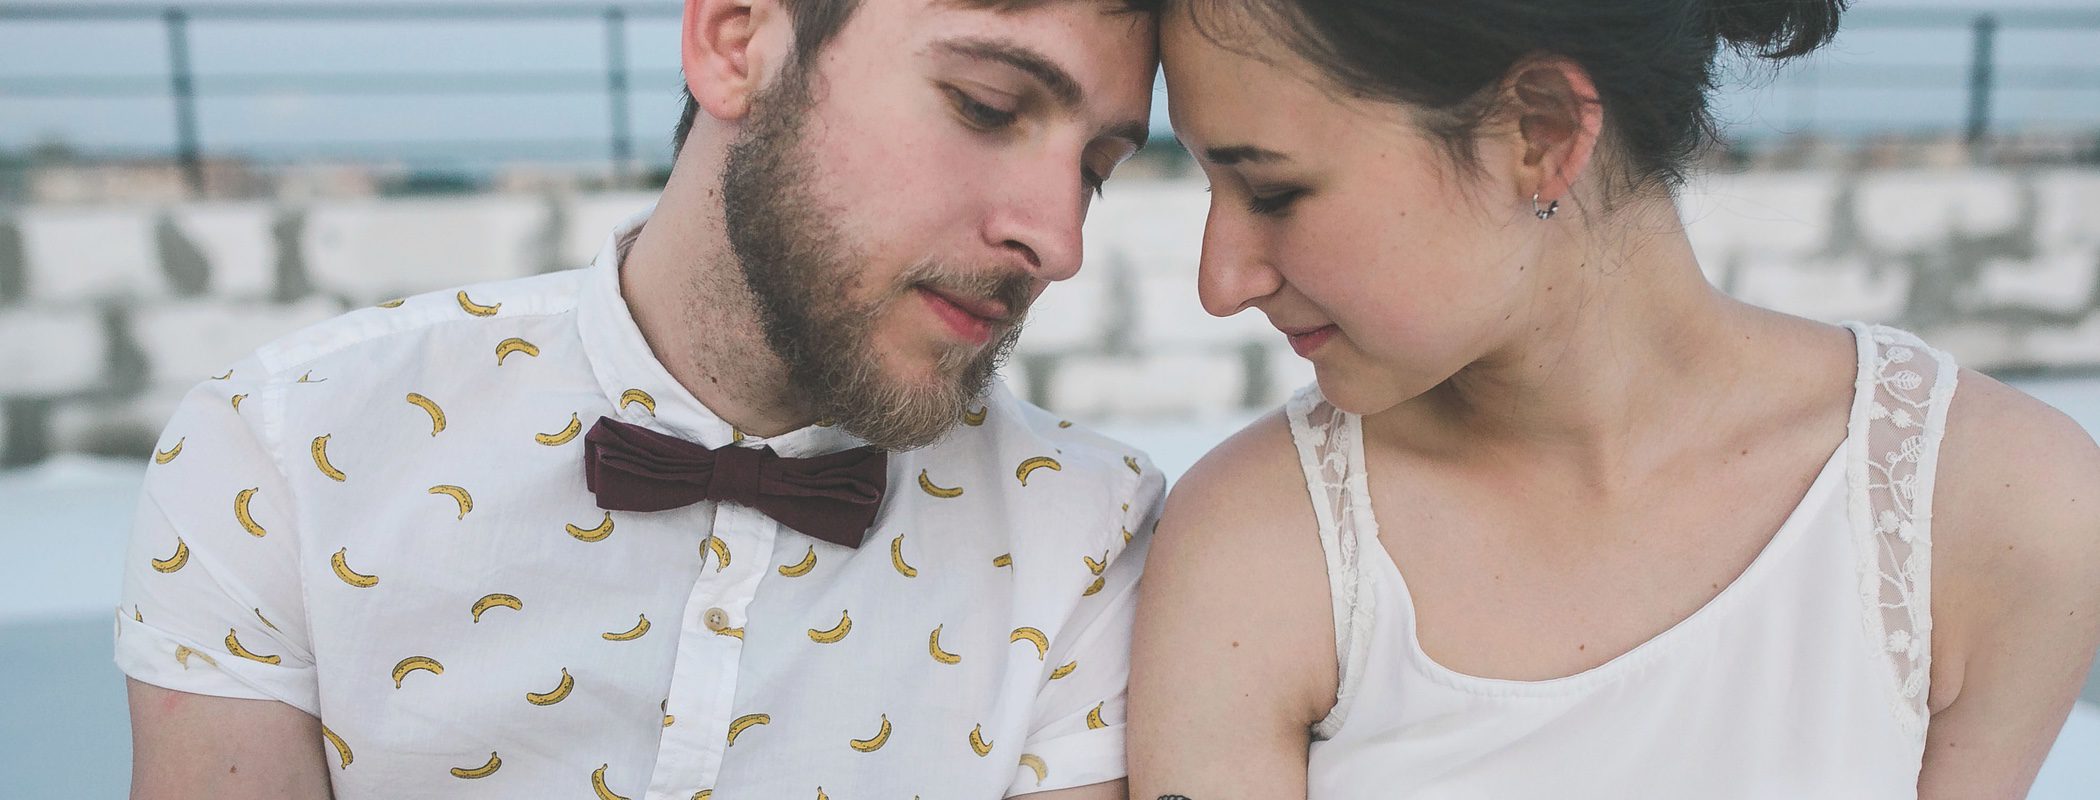 Tatuajes por amor: ¿error o símbolo de felicidad en la pareja?